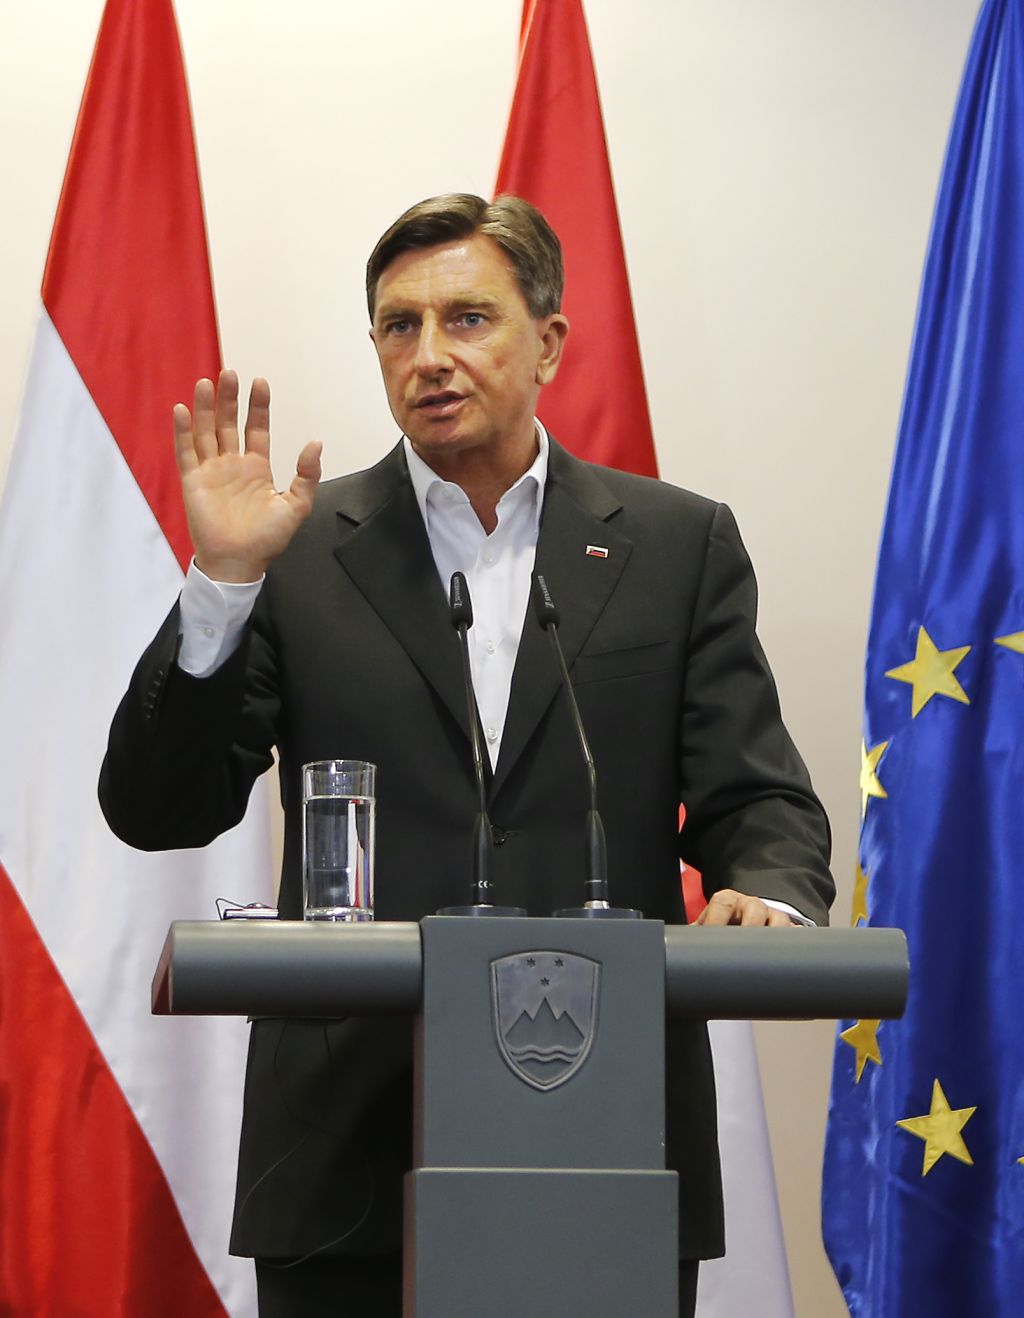 Pahorjevi so prepričani, da je bila Kolinda v Ameriki na dopustu